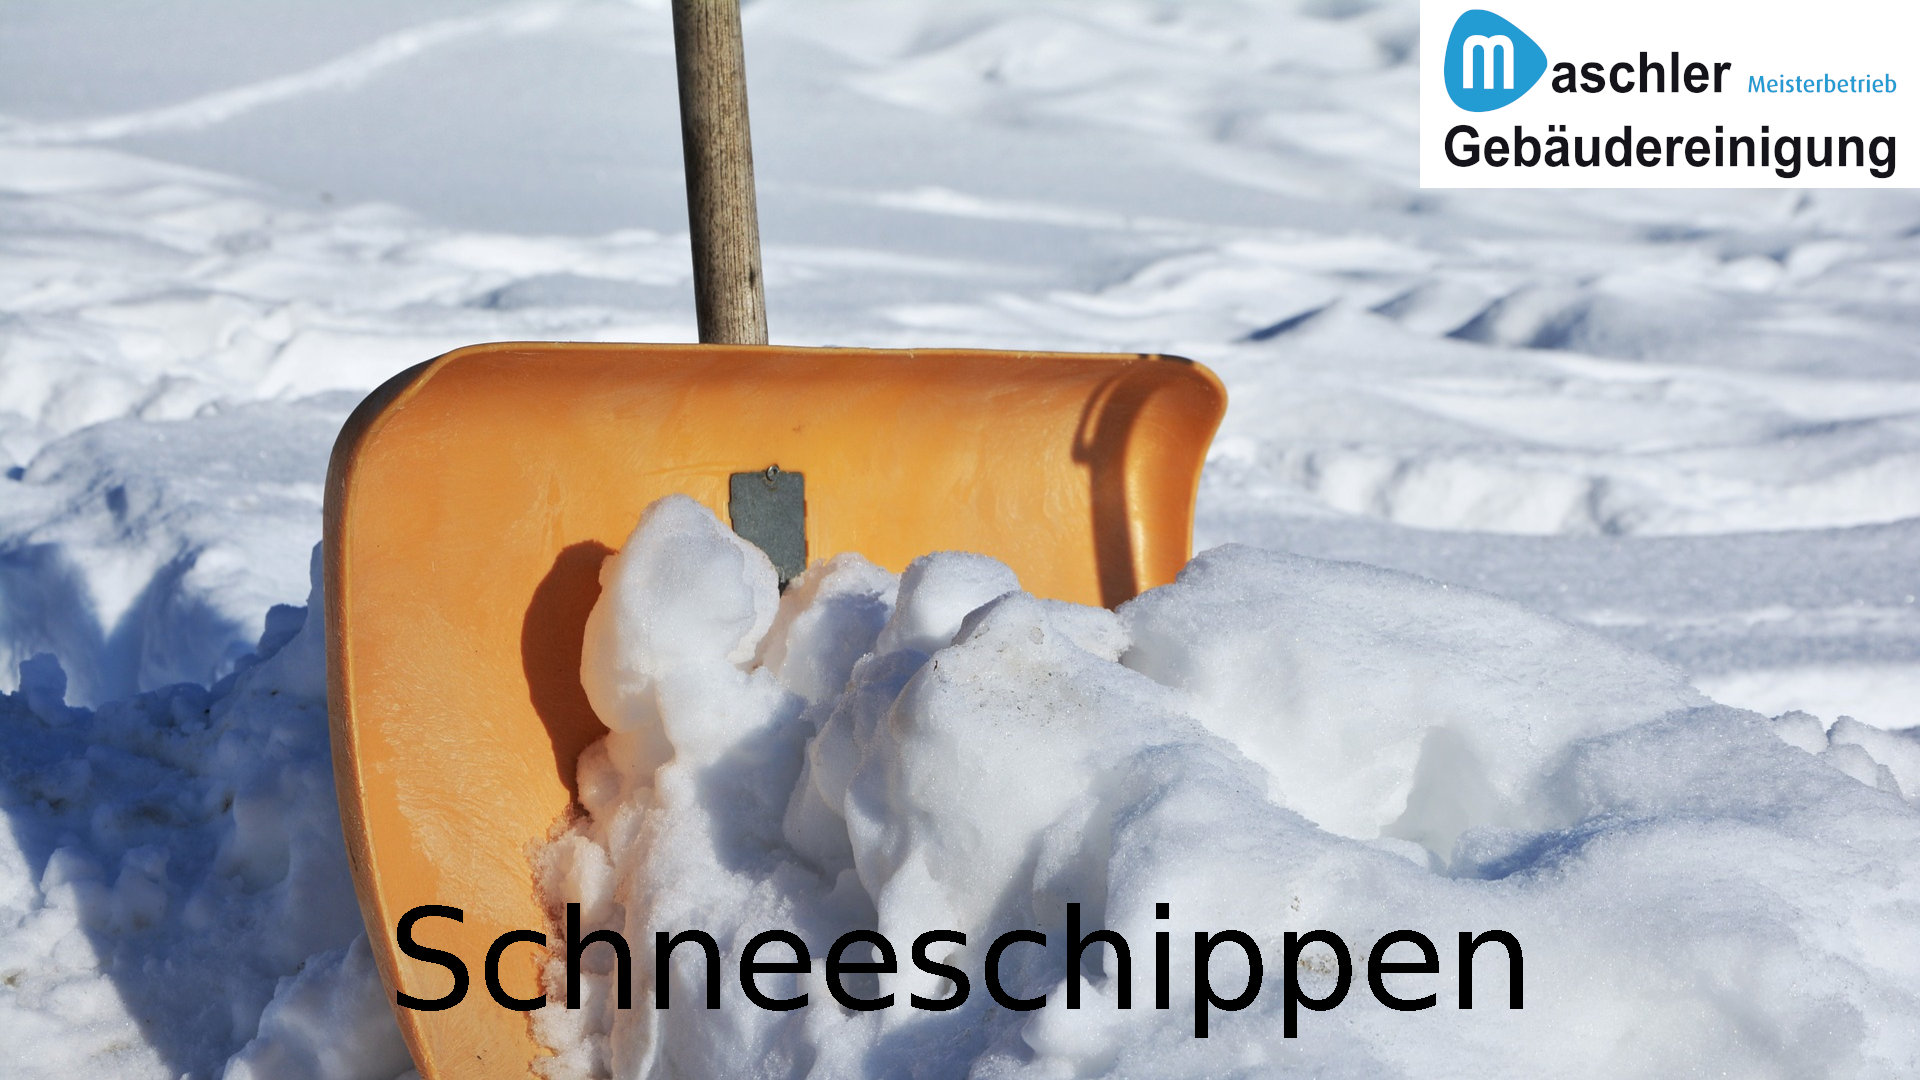 Schneeschippen - Gebäudereinigung Maschler Schwerin